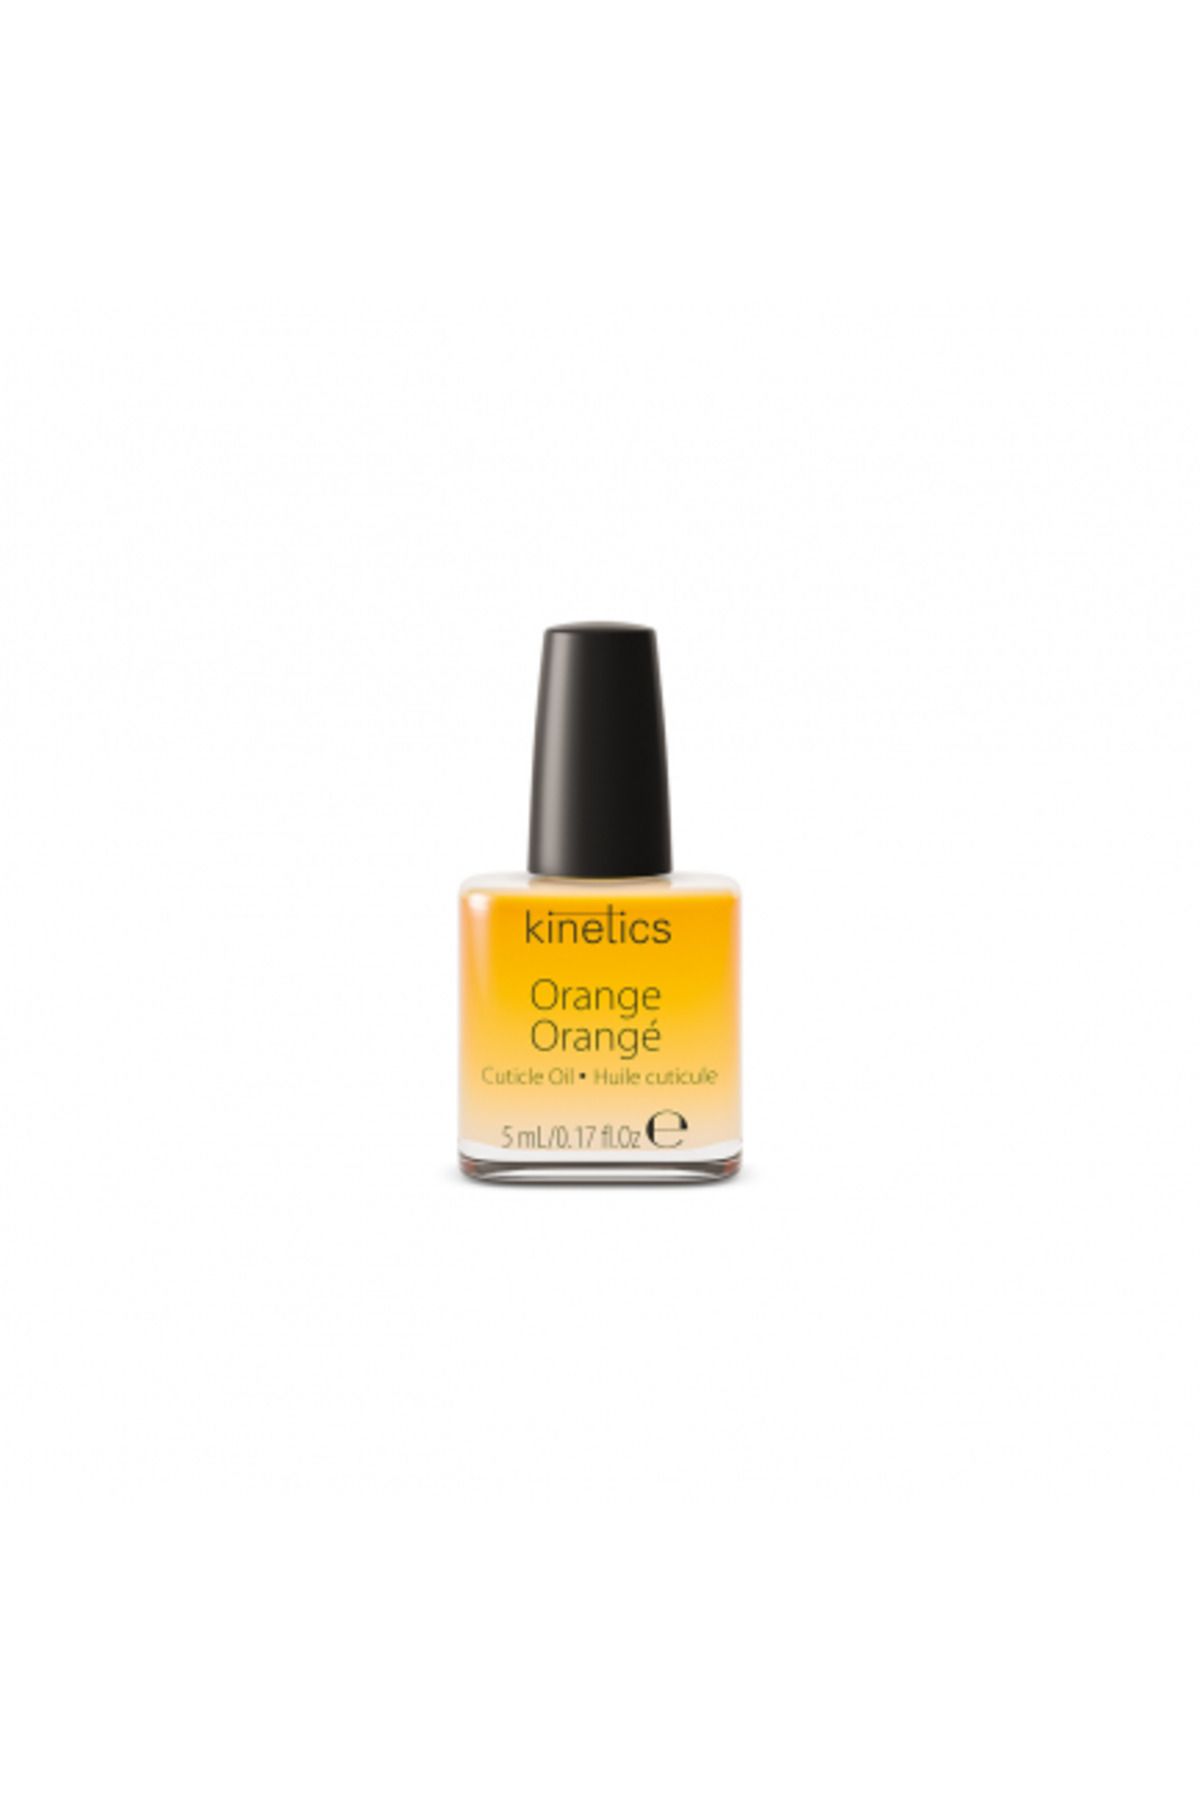 kinetics Orange Cuticle Oil 15ml Tırnak Kütikül Besleyici Yağ